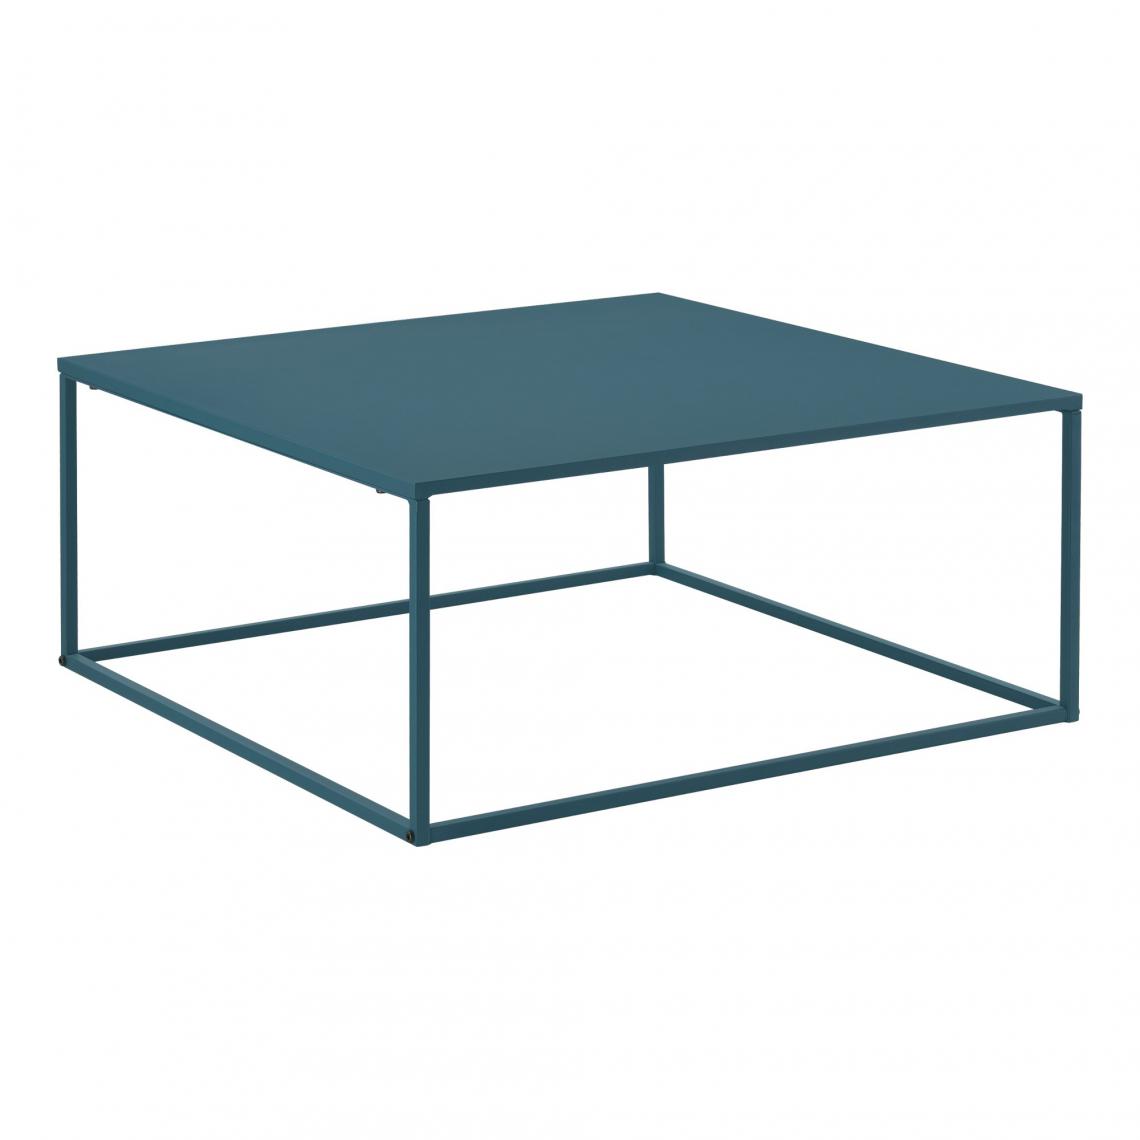 Helloshop26 - Table basse carrée salon en métal 85 x 85 cm turquoise 03_0006134 - Tables basses